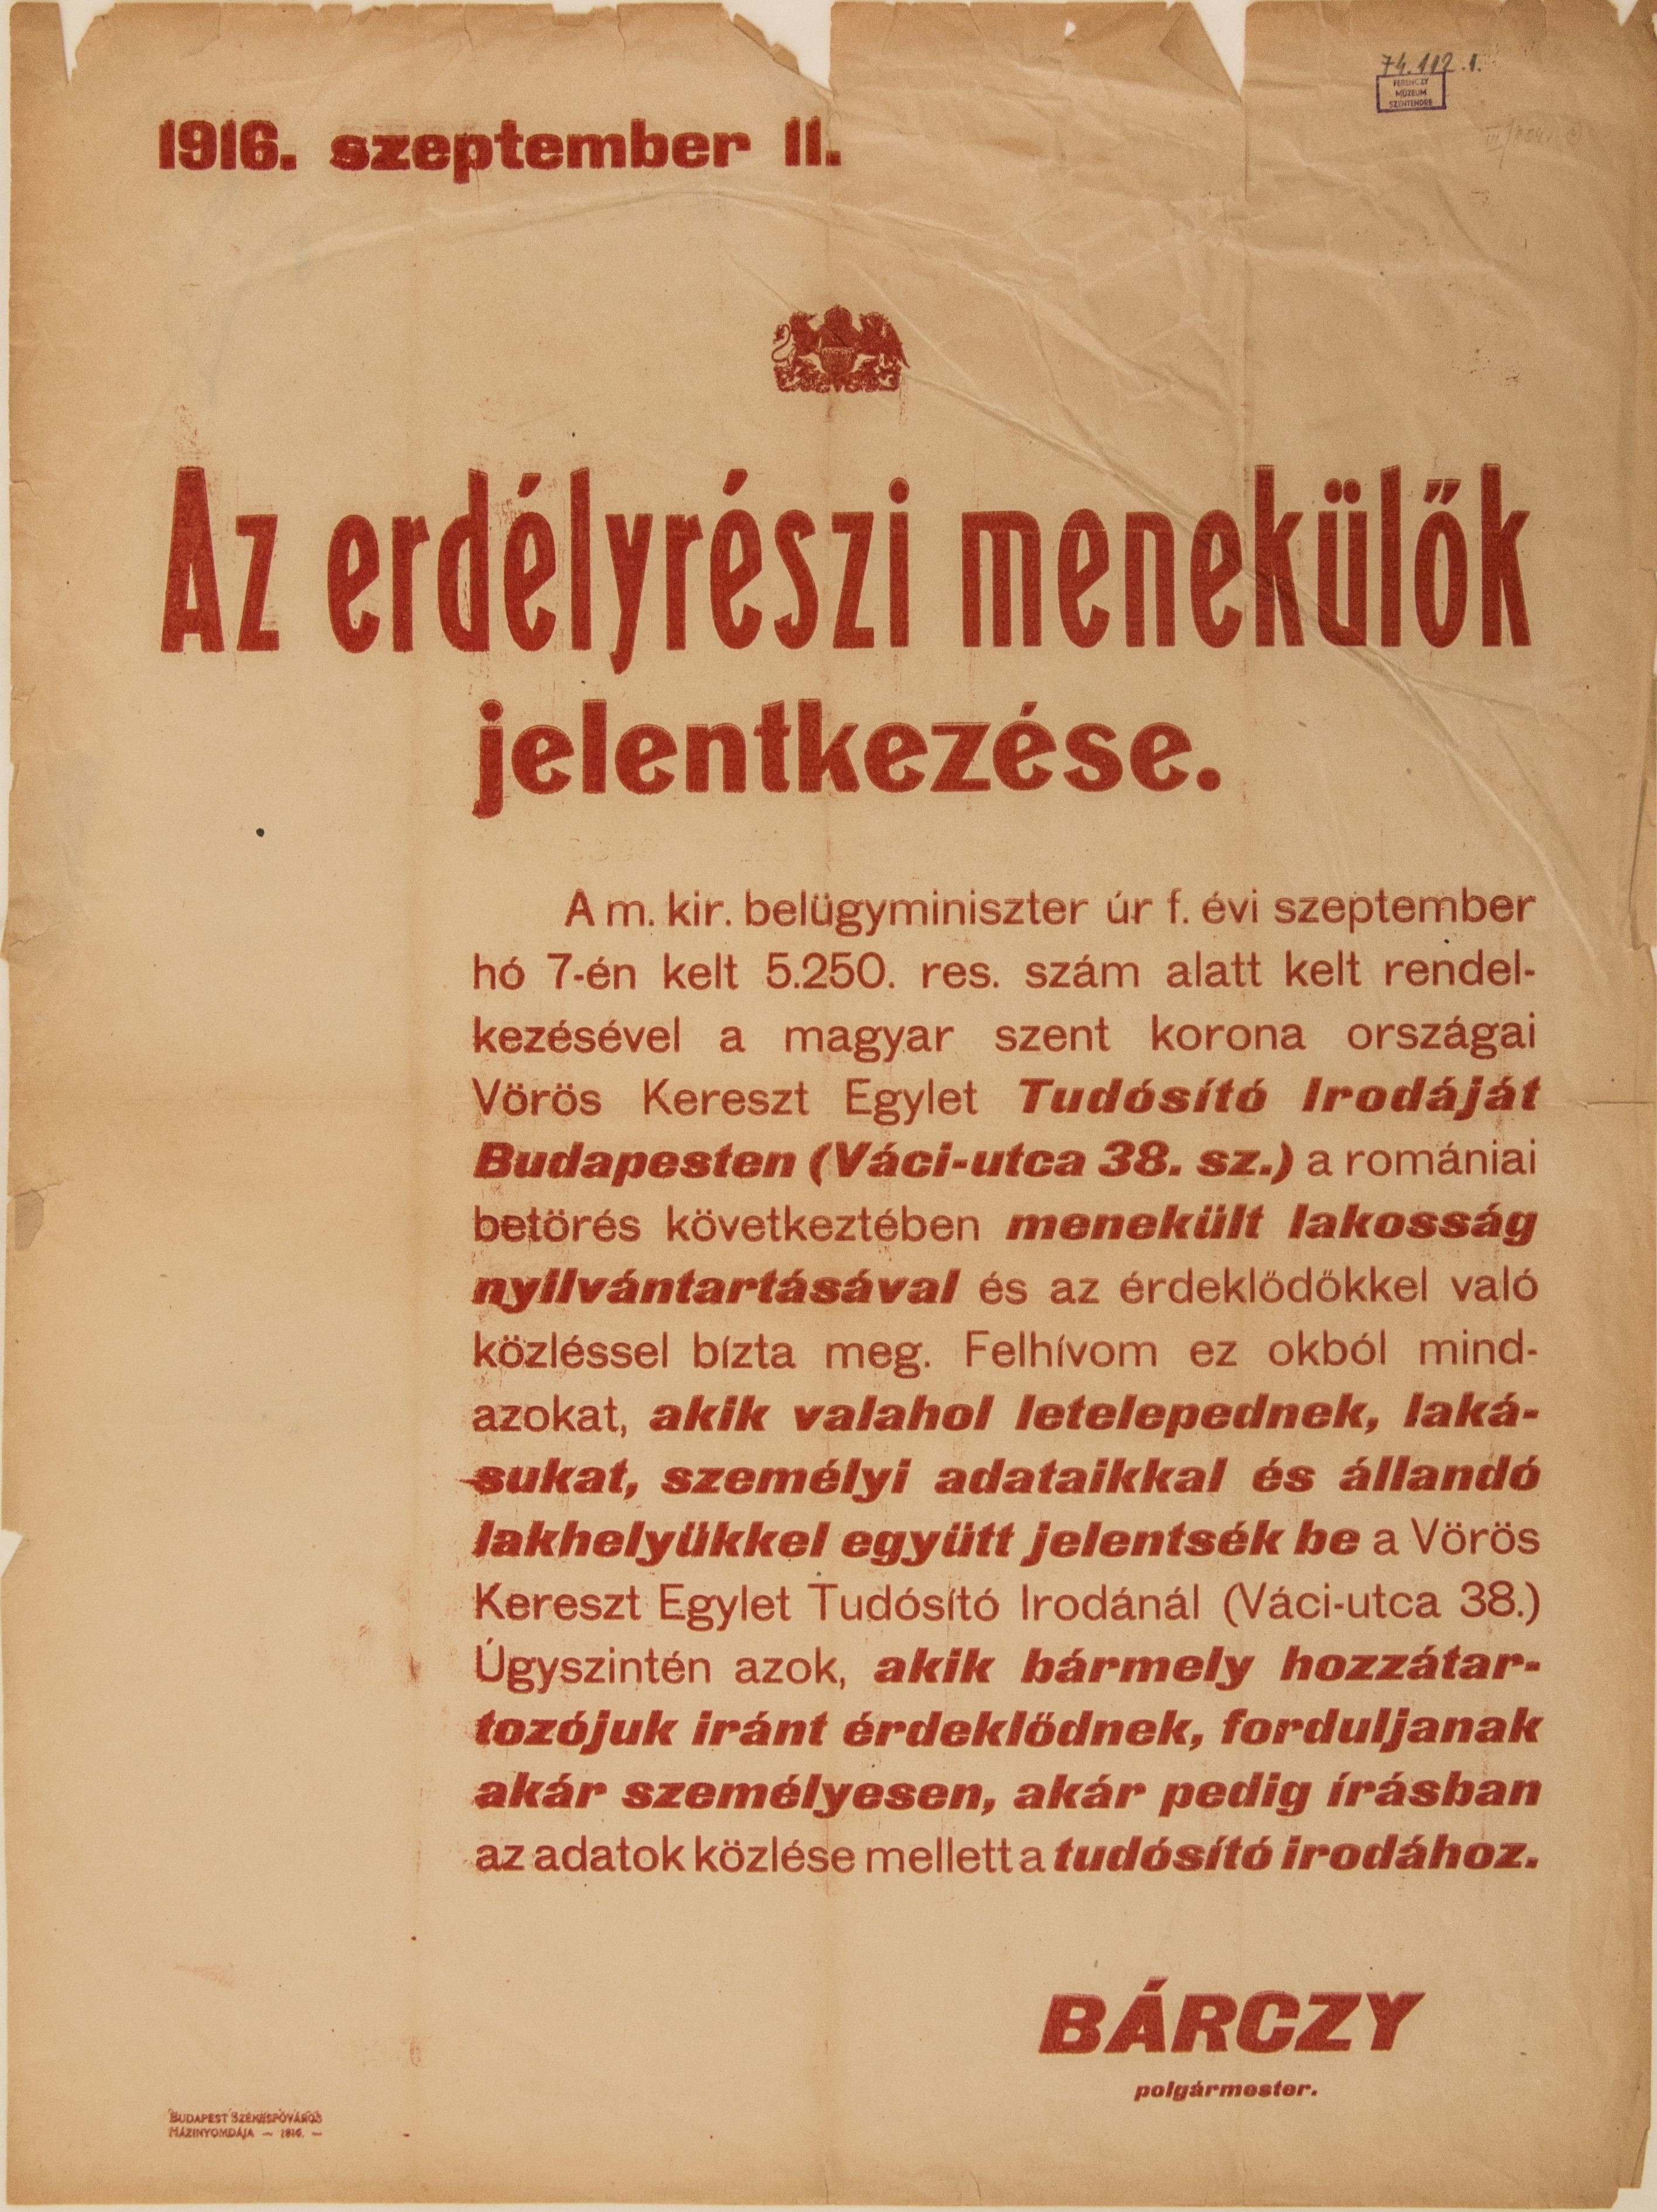 Az erdélyrészi menekülők jelentkezése, 1916.09.11. (fehér alap, piros betű) (Ferenczy Múzeumi Centrum CC BY-NC-SA)